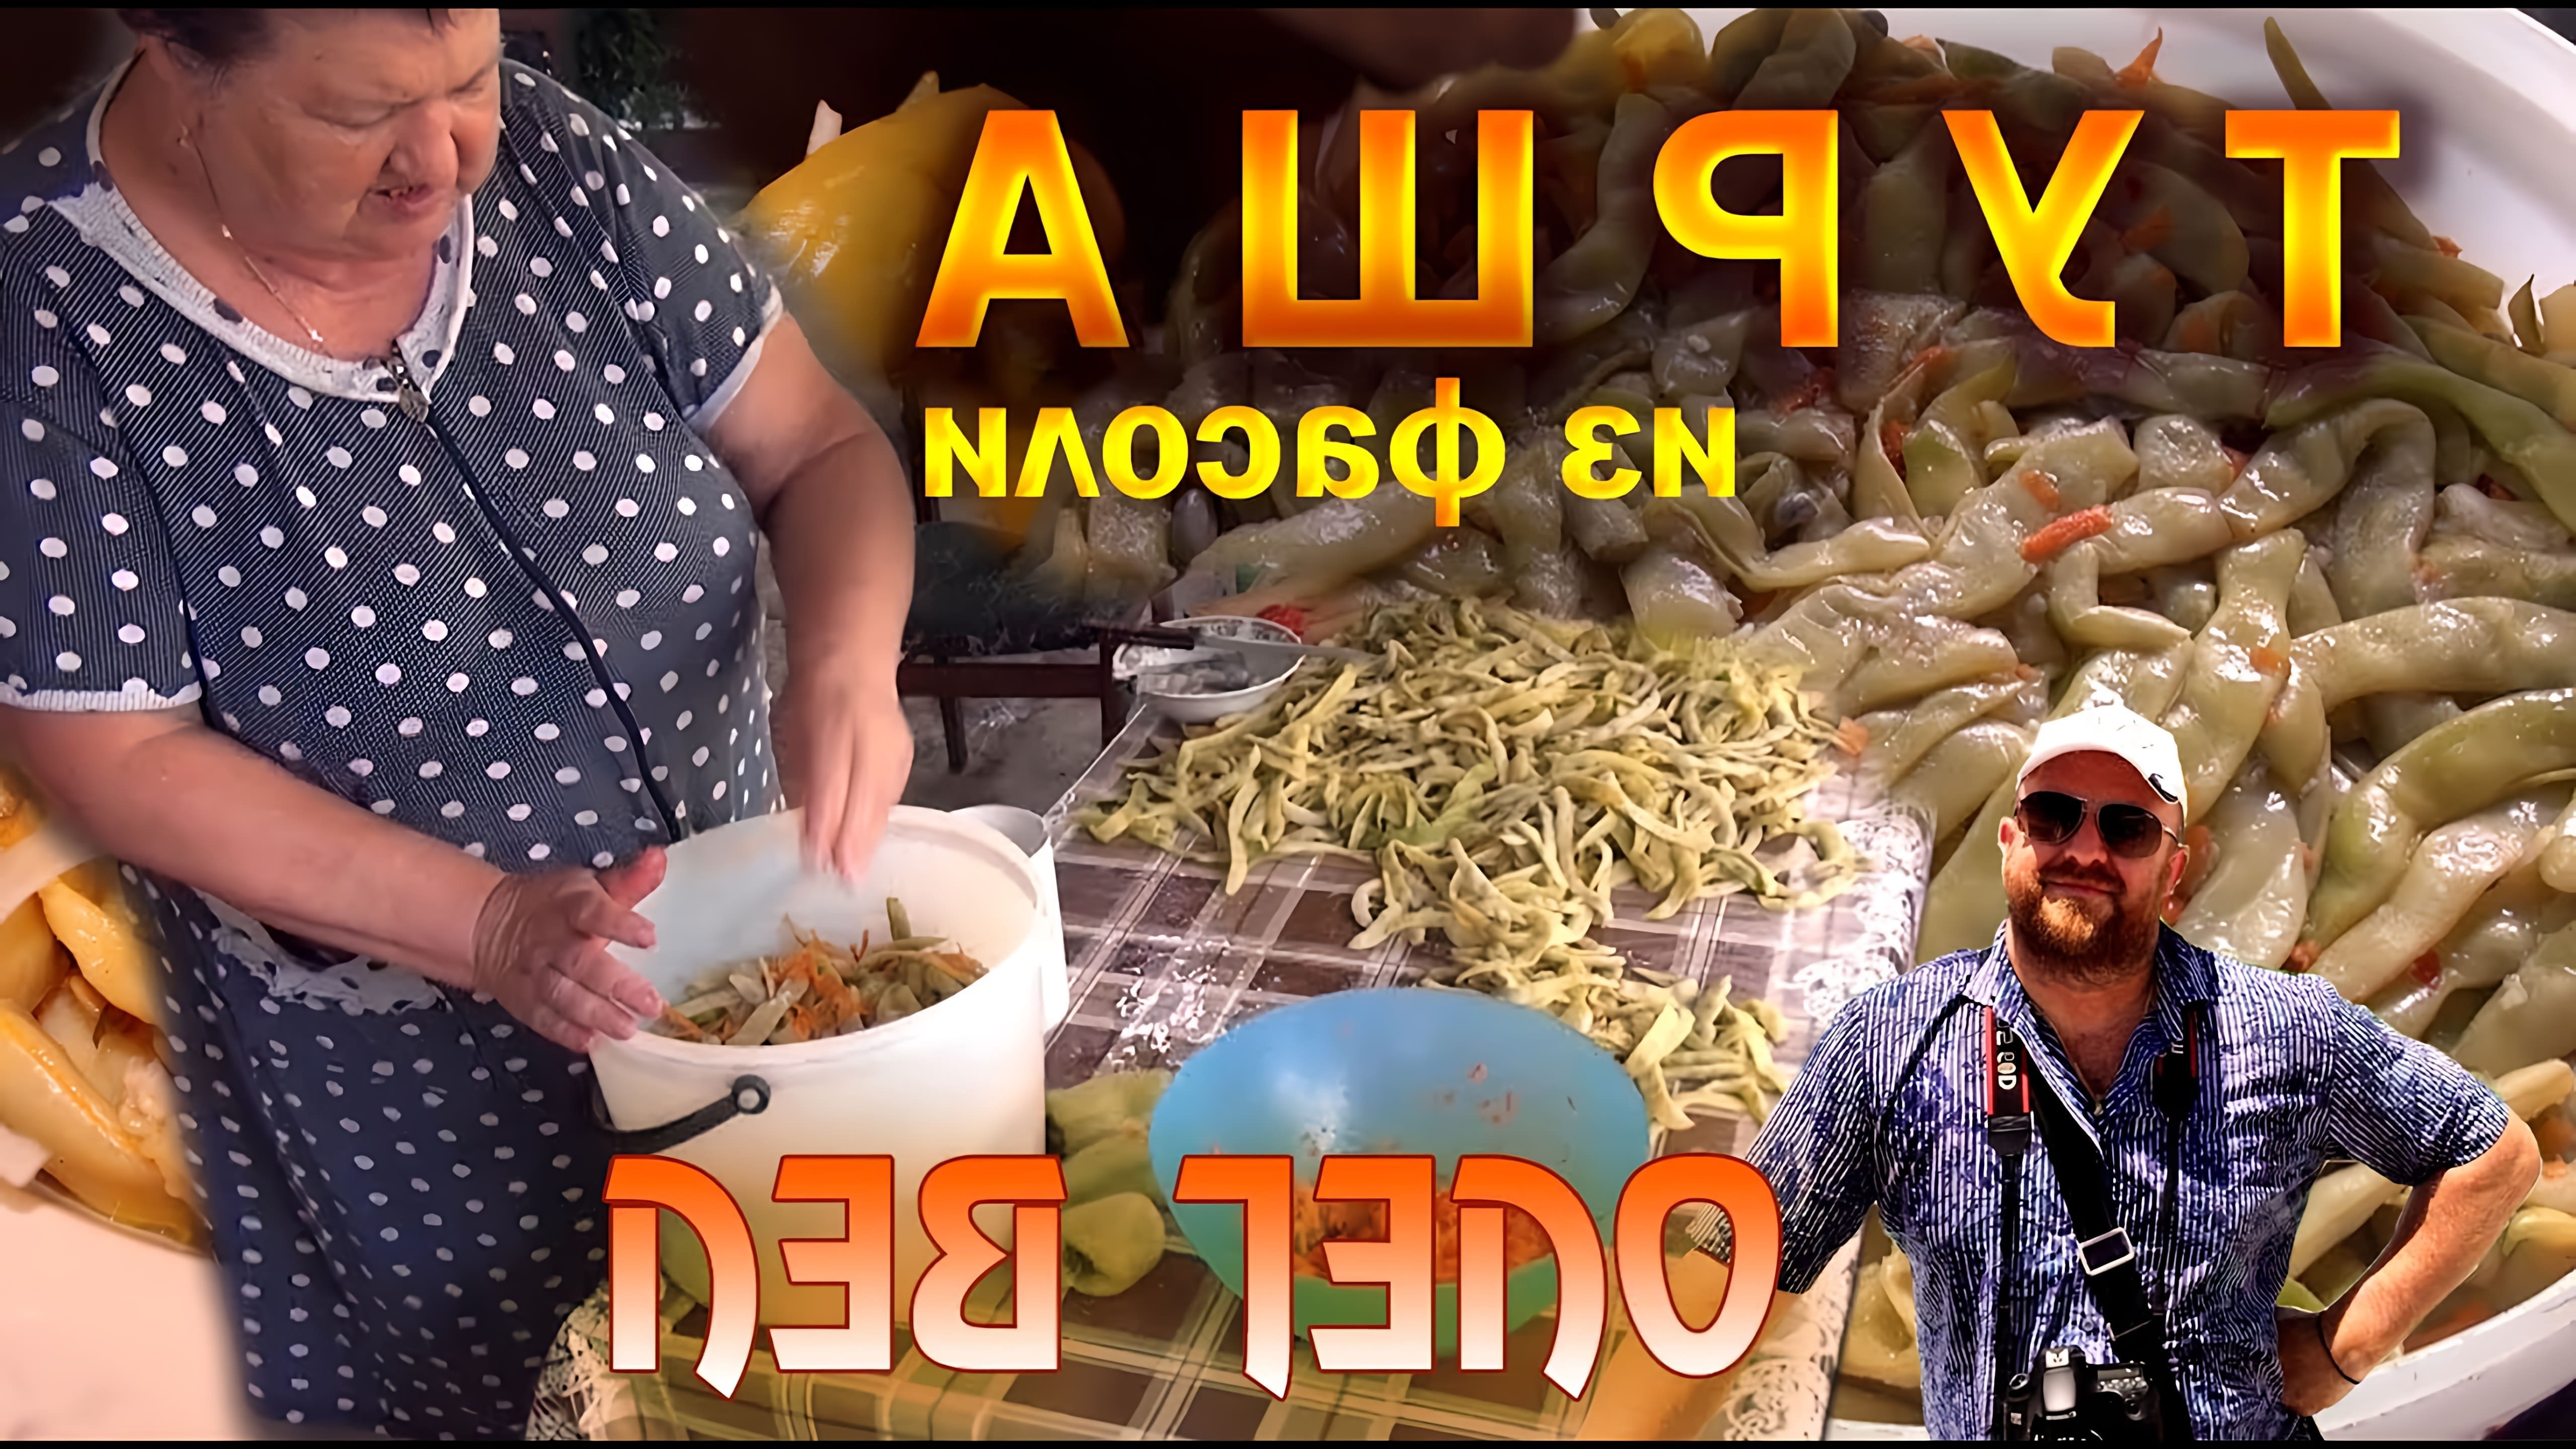 В этом видео показан процесс приготовления турши, традиционного блюда из фасоли и перца, которое обычно готовят в южных регионах России